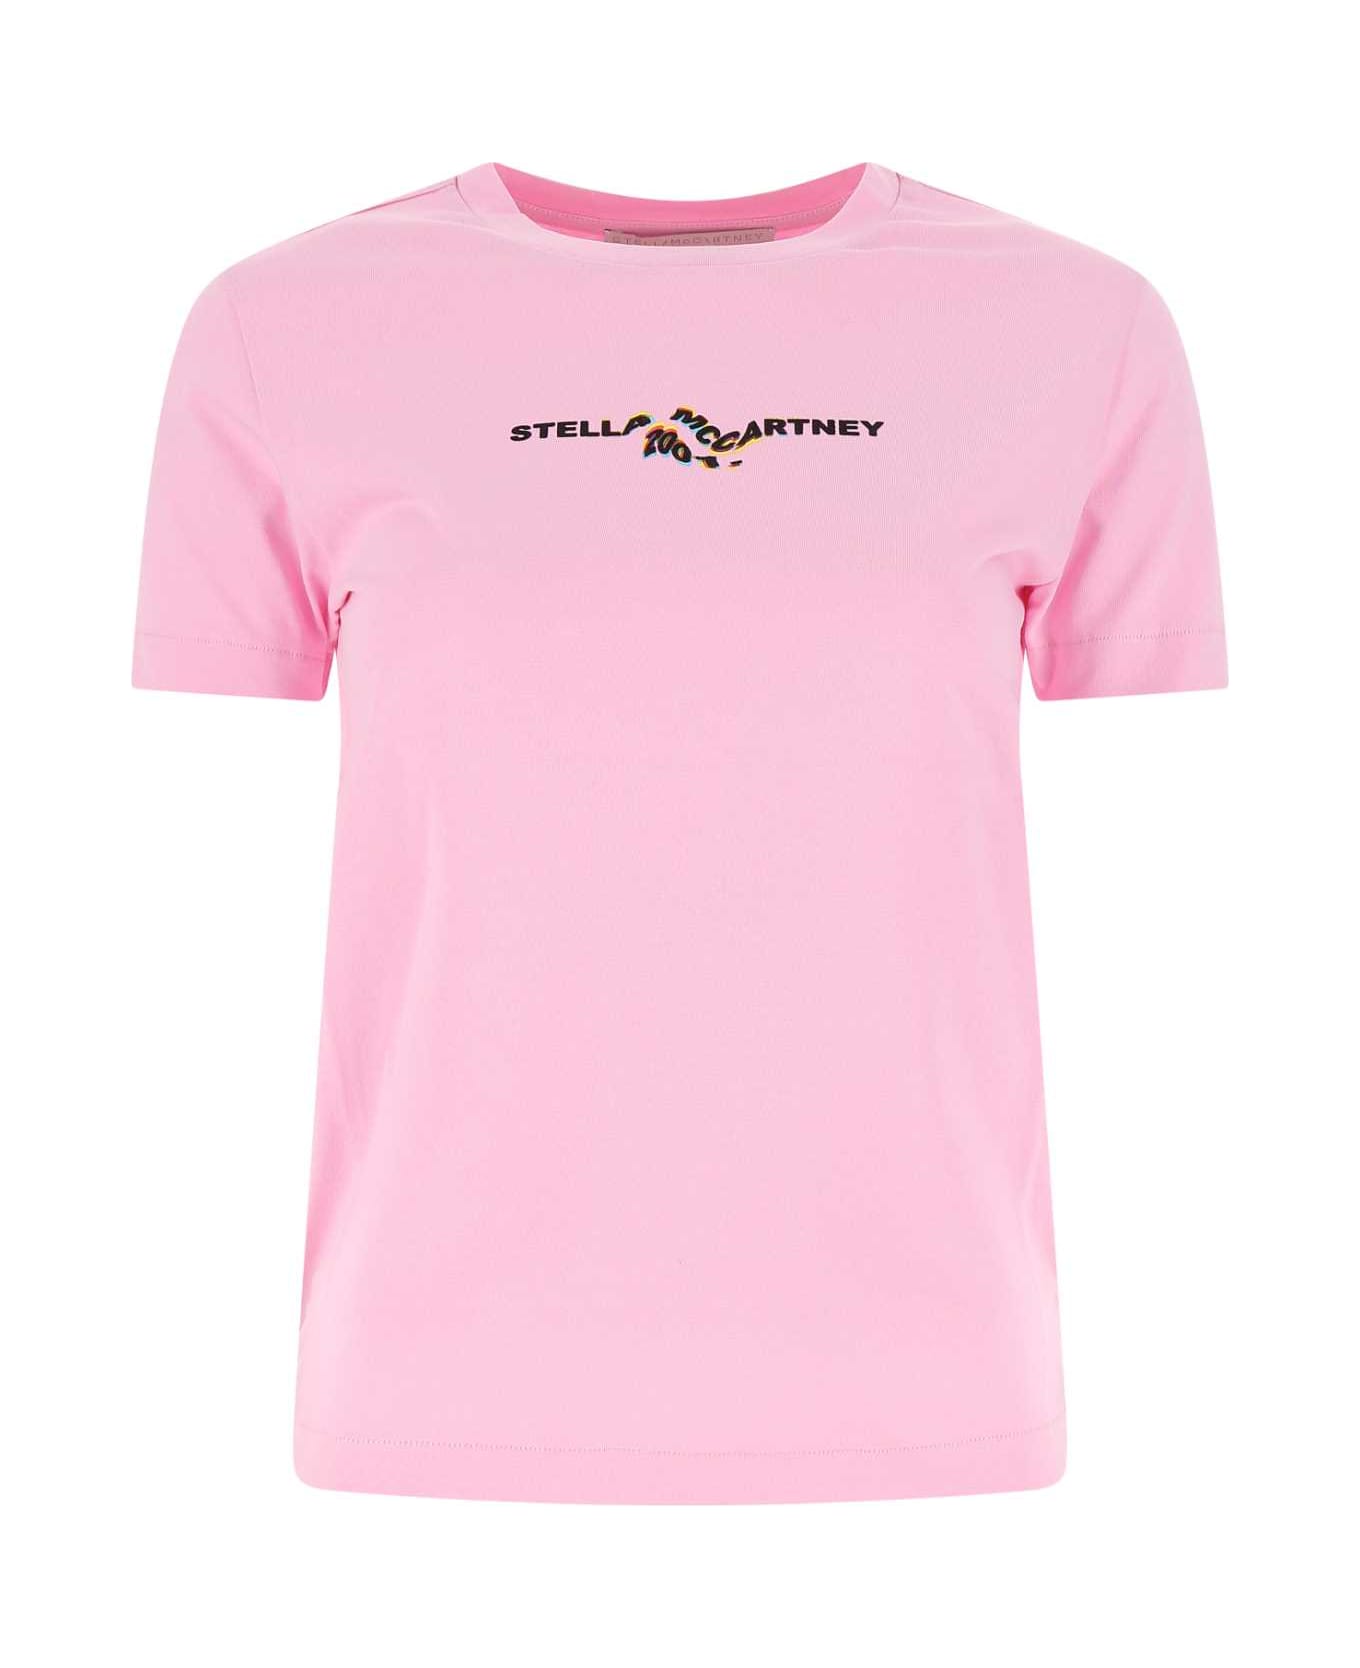 Stella McCartney Pink Cotton T-shirt - 5636